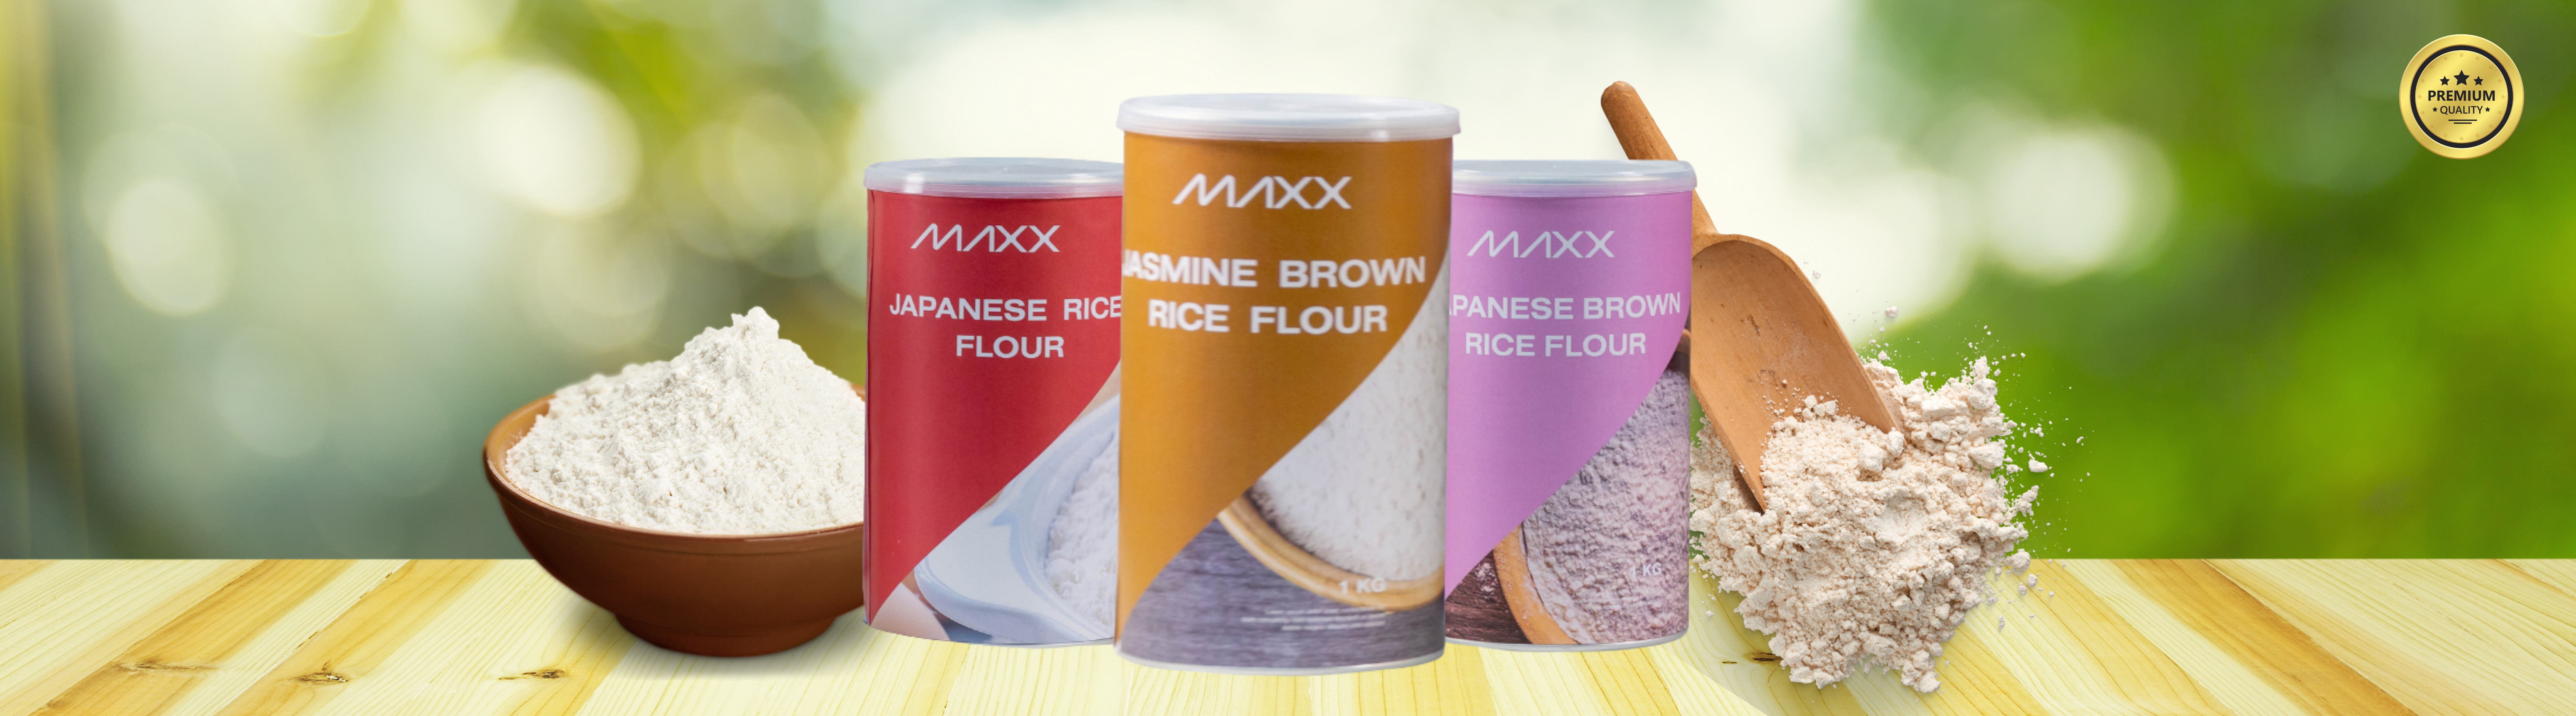 Maxx Rice Flour1